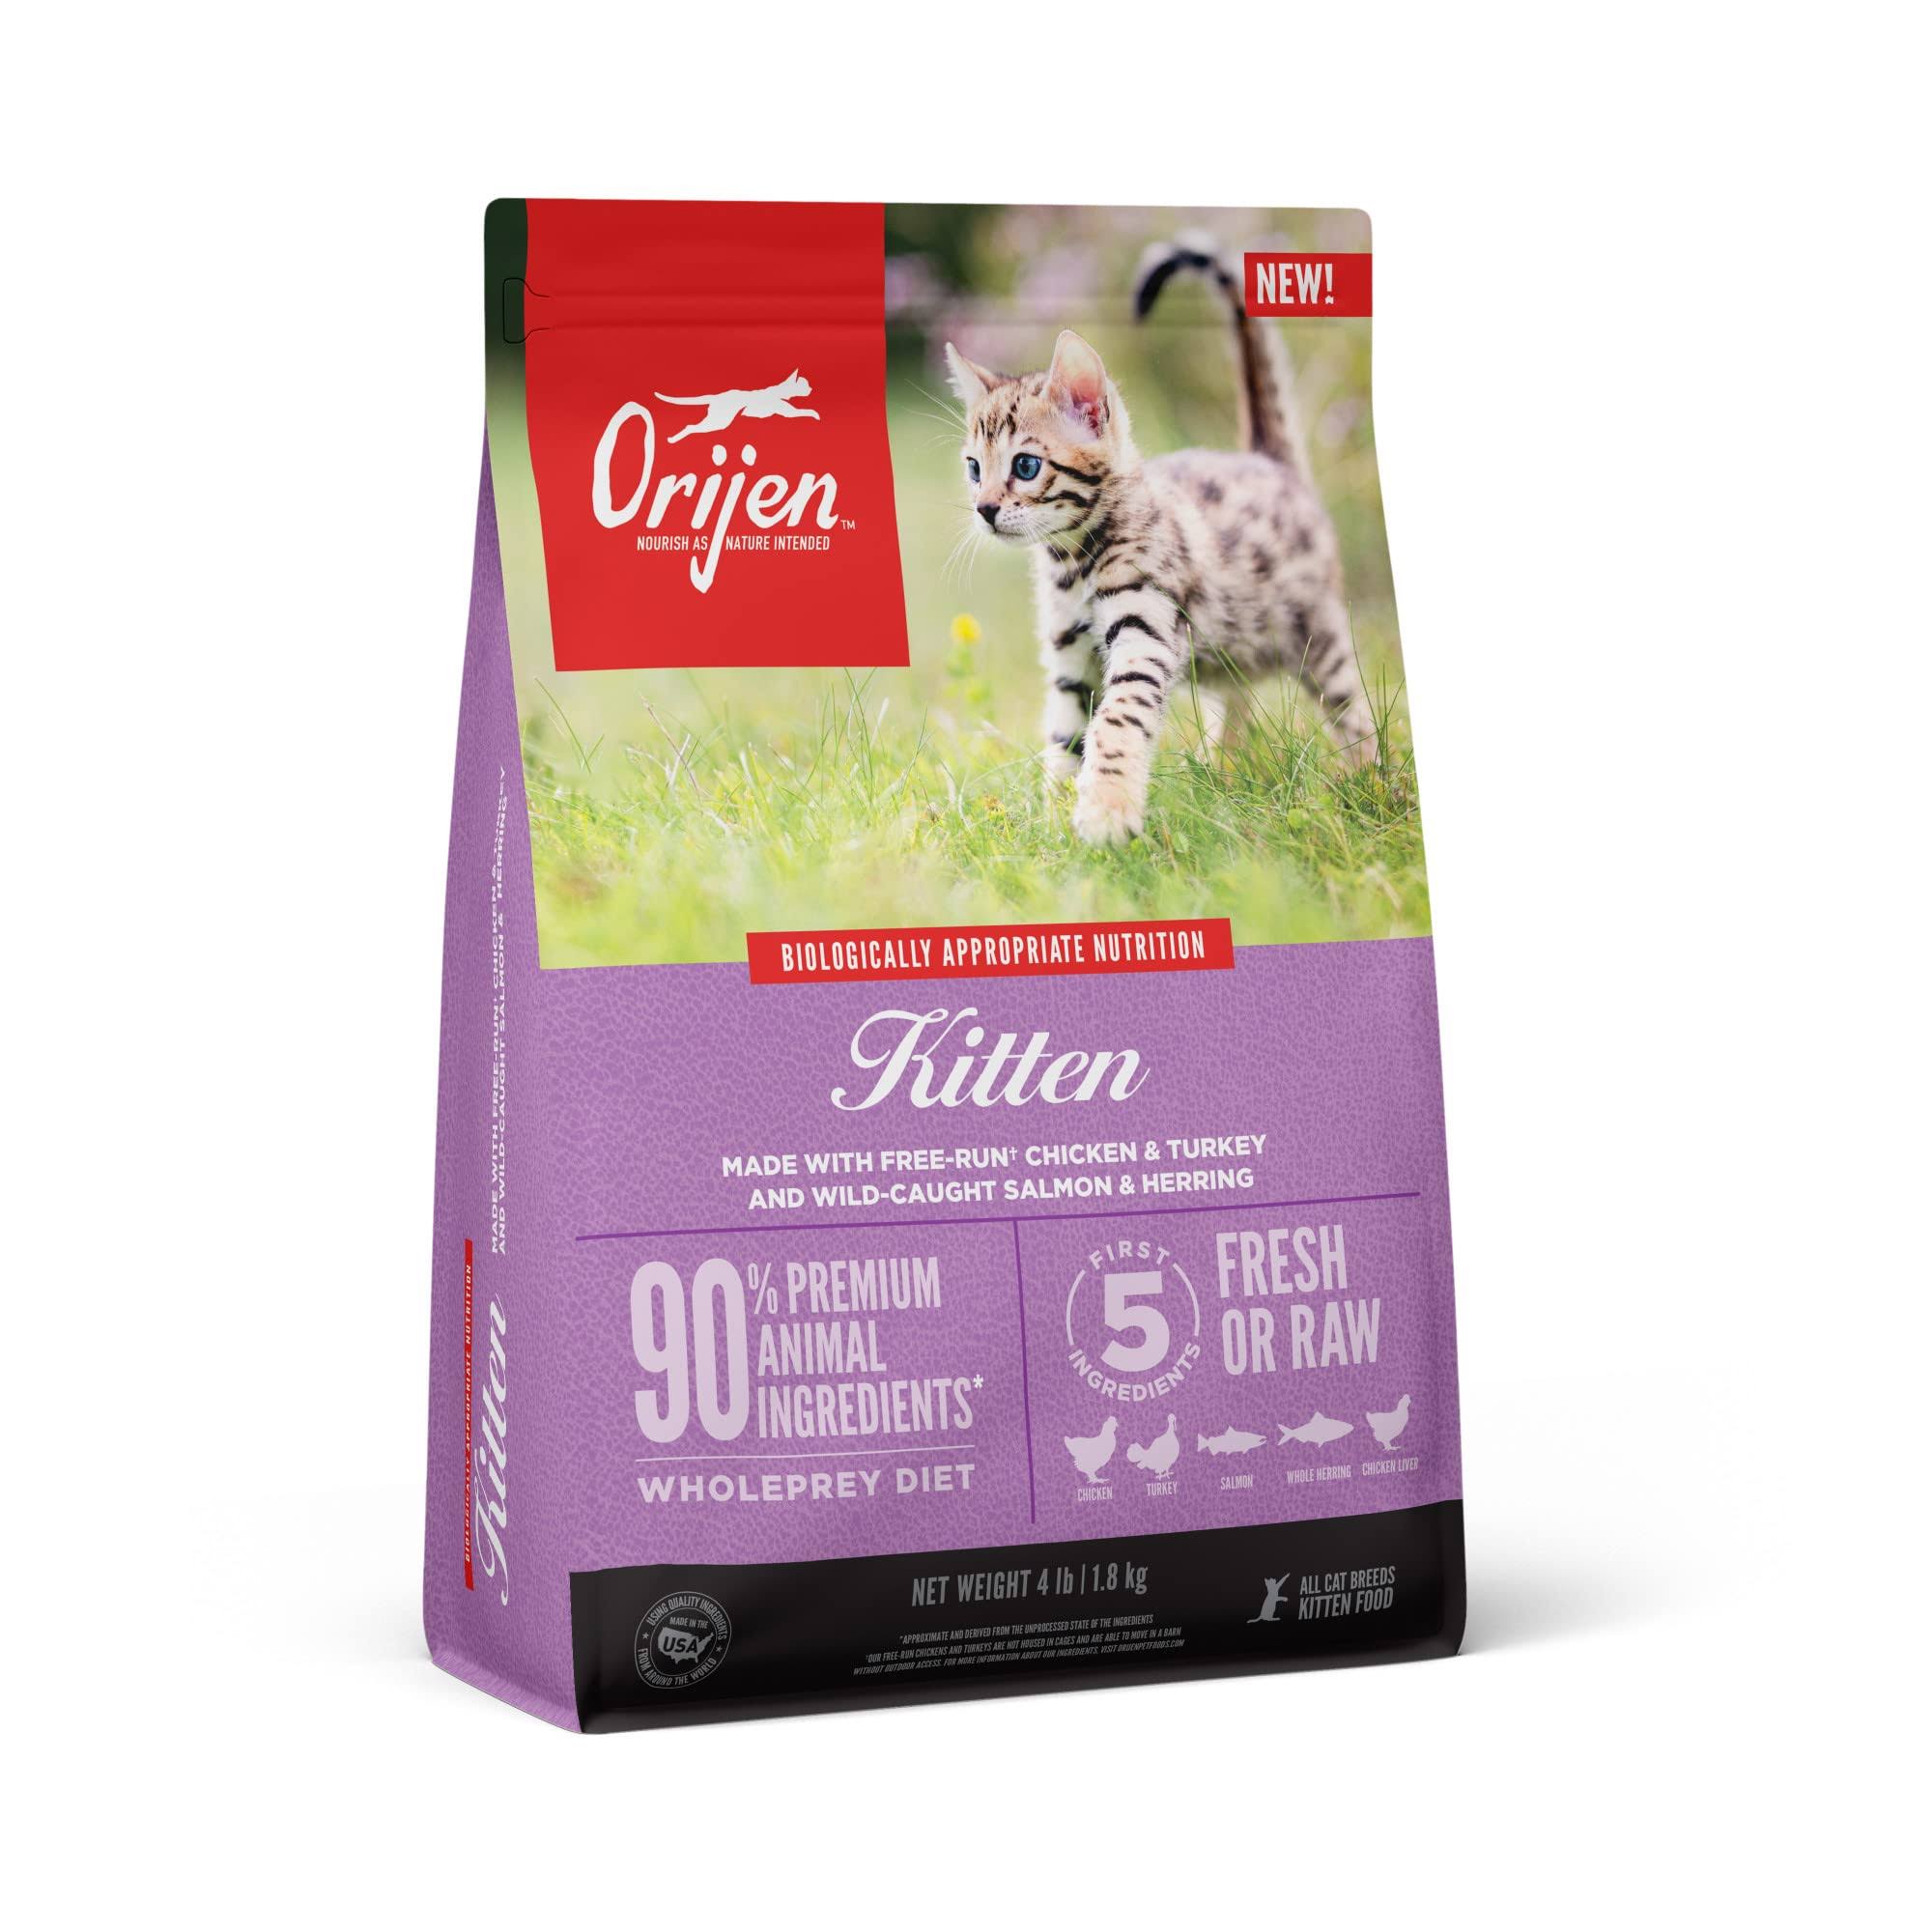 Orijen Grain-Free Kitten Food 4 LB